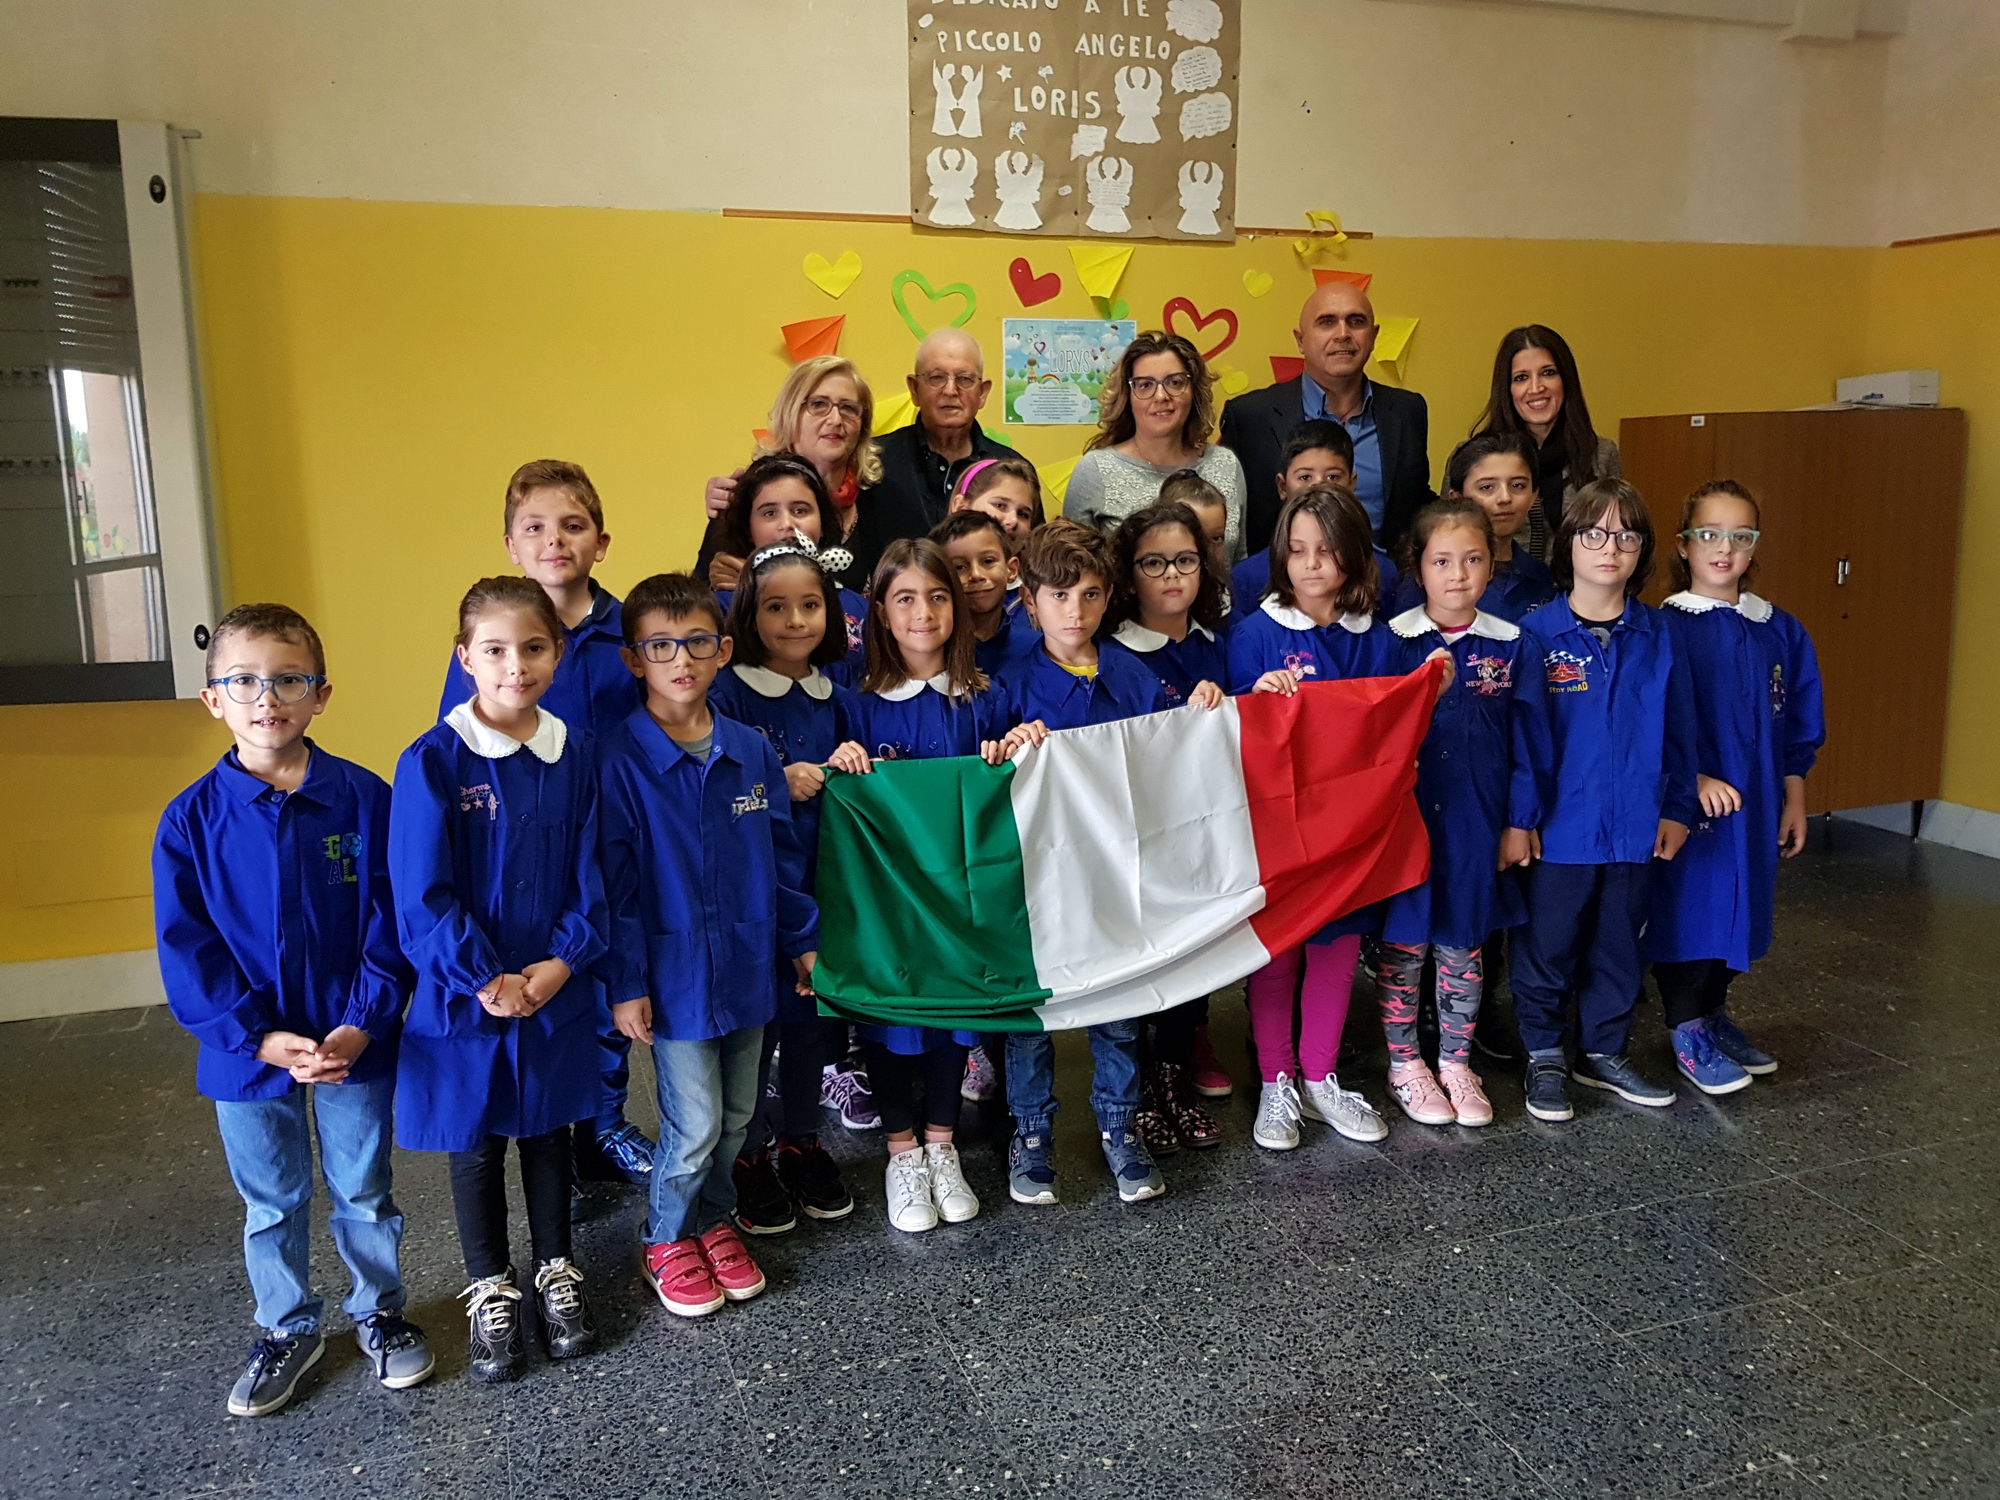  L’Avis dona un tricolore ai ragazzi delle scuole: “Simbolo della nostra dignità”